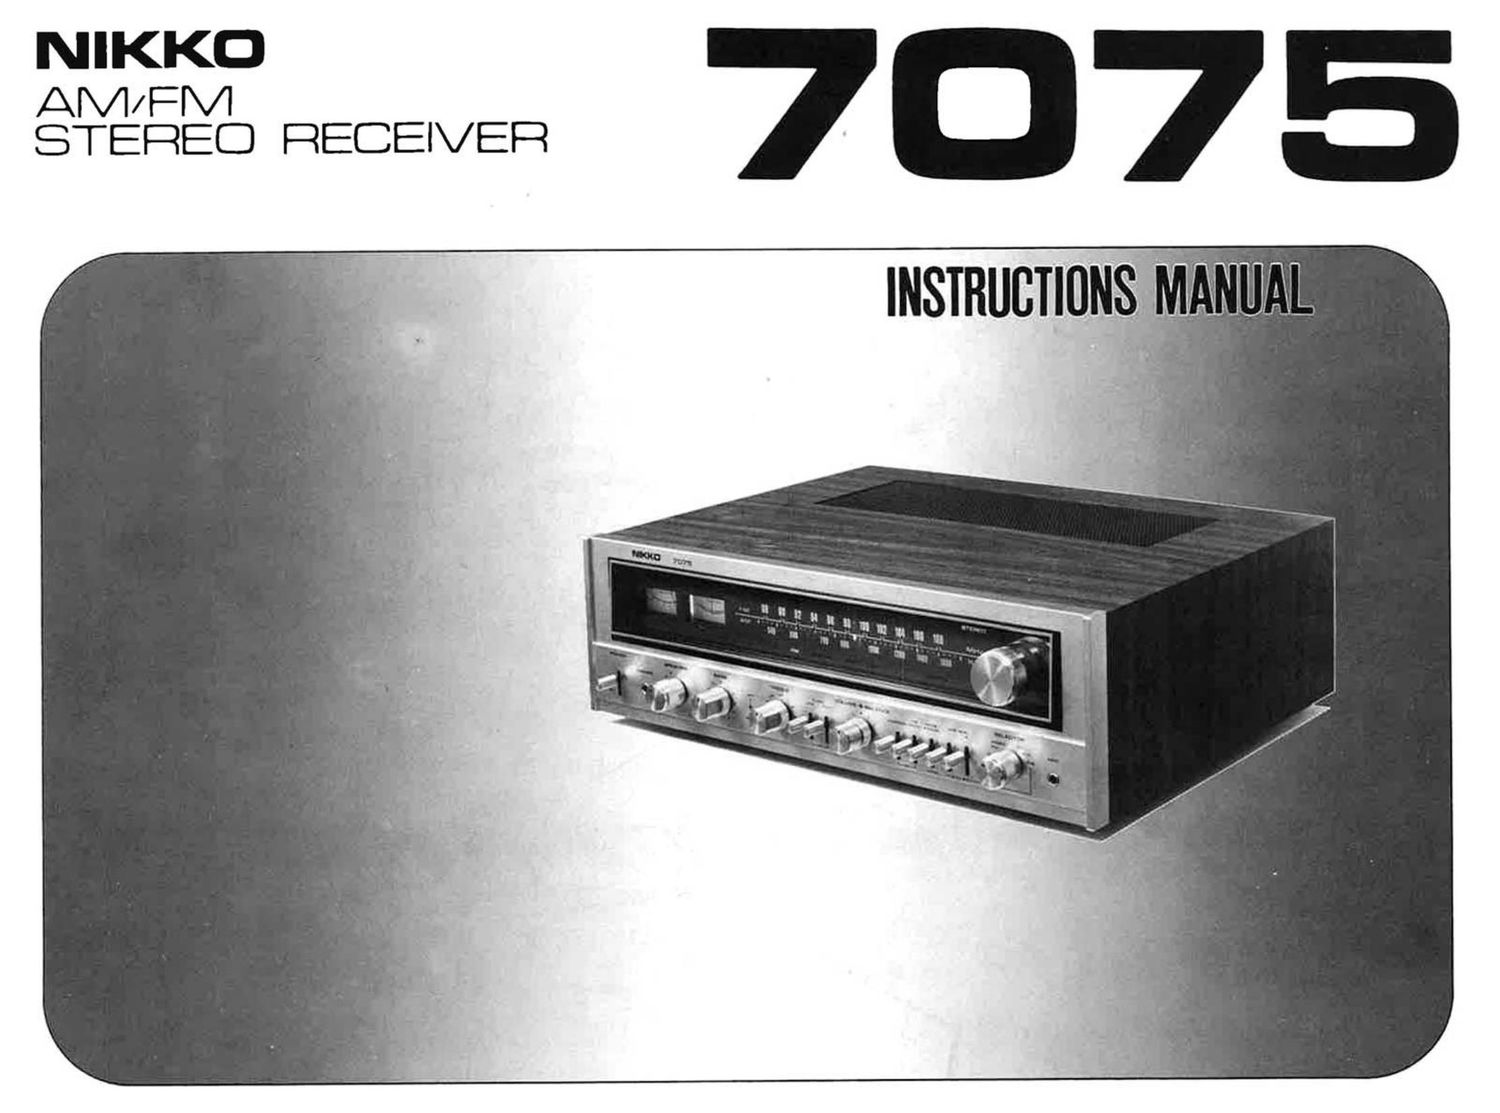 Nikko 7075 Owners Manual